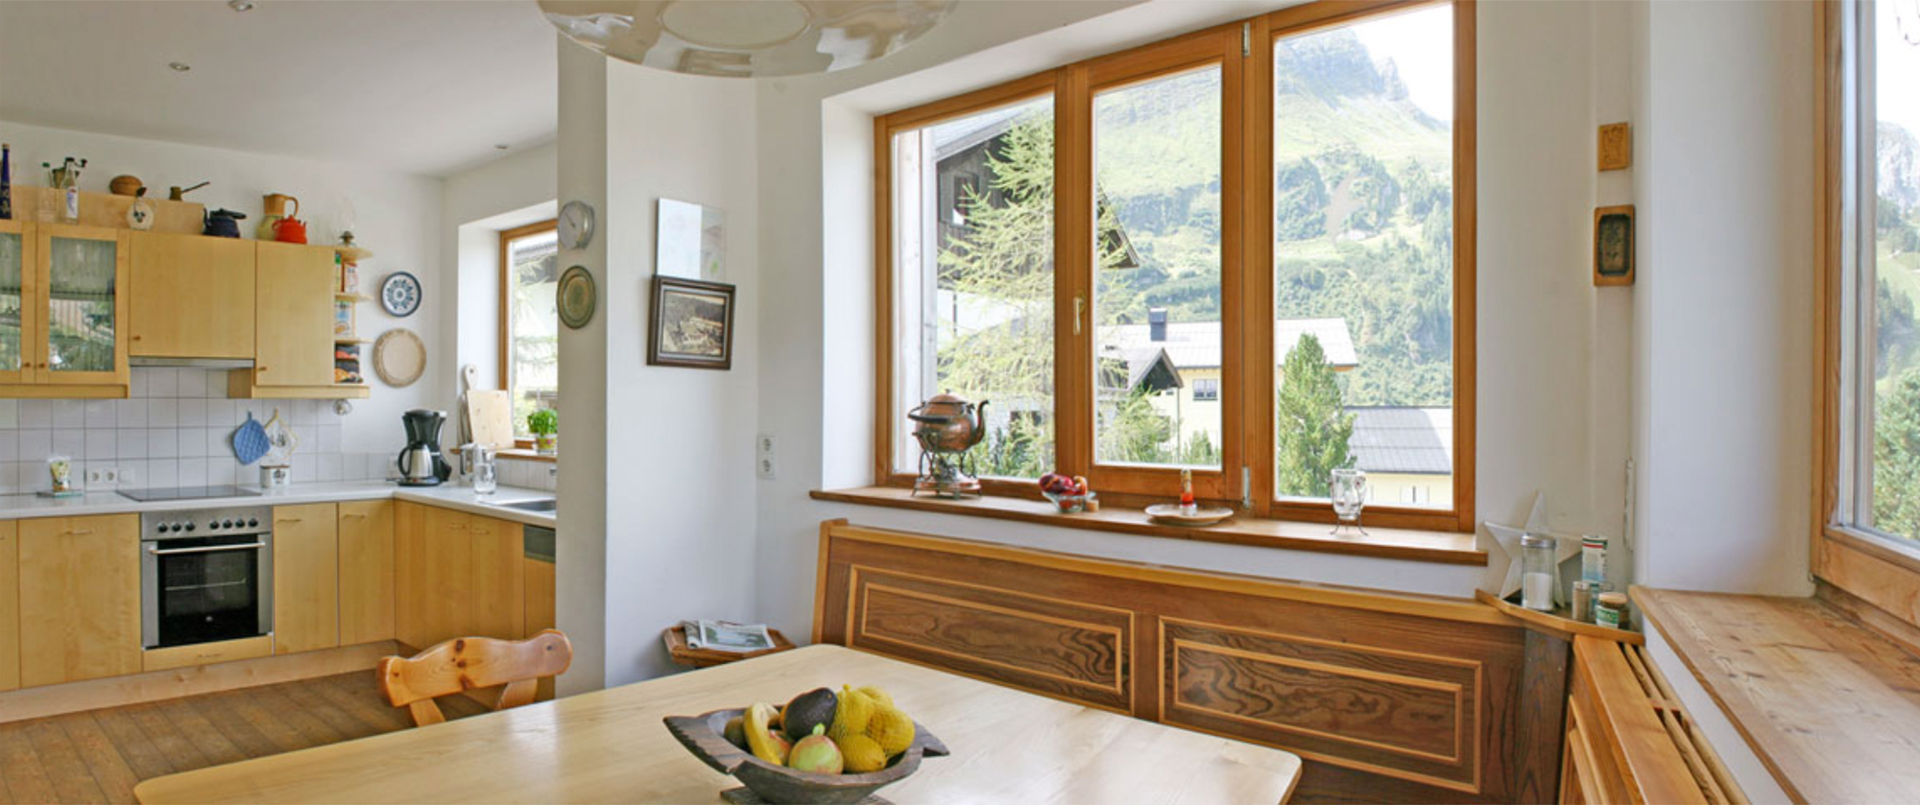 Ferienhaus Meilinger in Obertauern – Küche und Essecke der Wohnung im Erdgeschoss